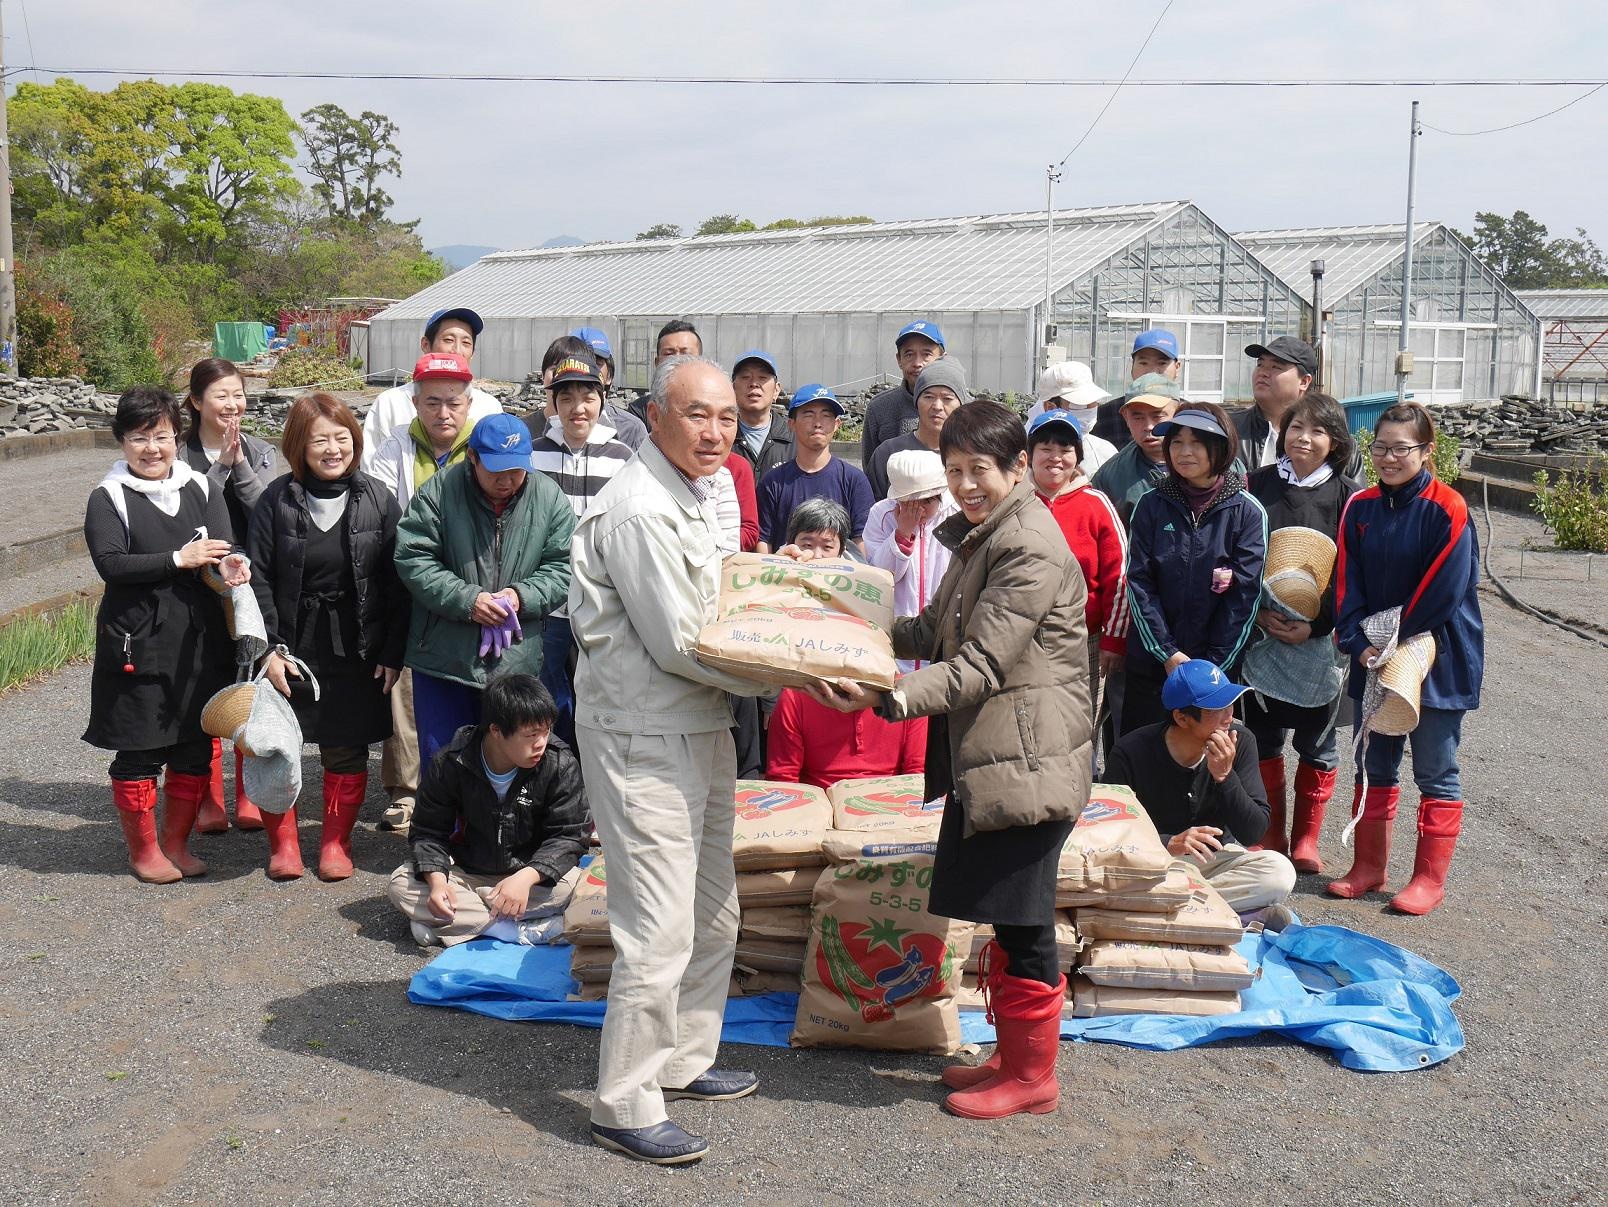 1949年の創業以来、肥料および飼料の製造・販売を通じて、静岡の食を支えてきた伊豆川飼料株式会社